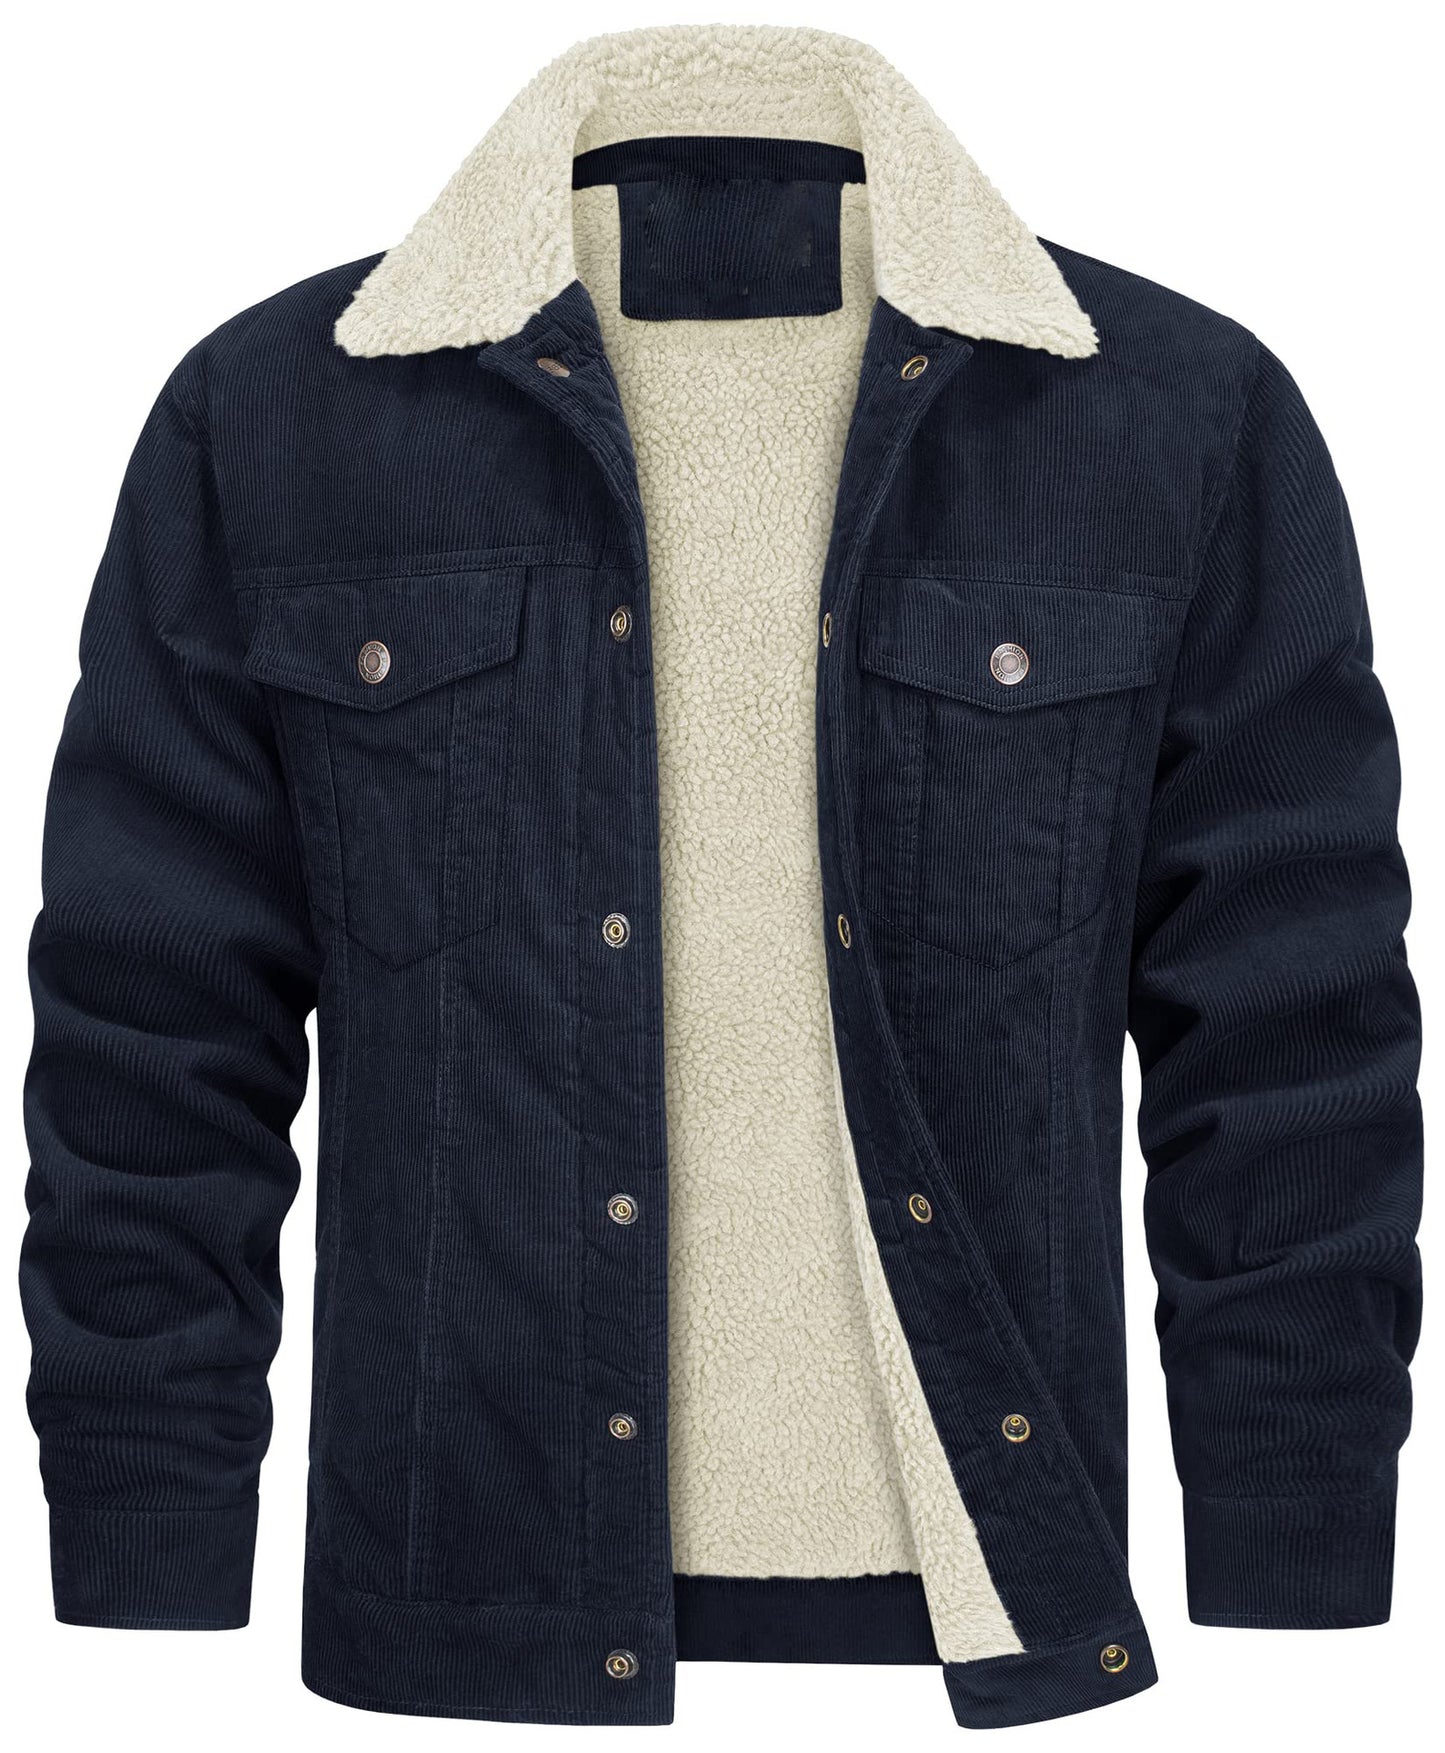 Casual Winter Long Sleeves Velvet Jacket Coats for Men